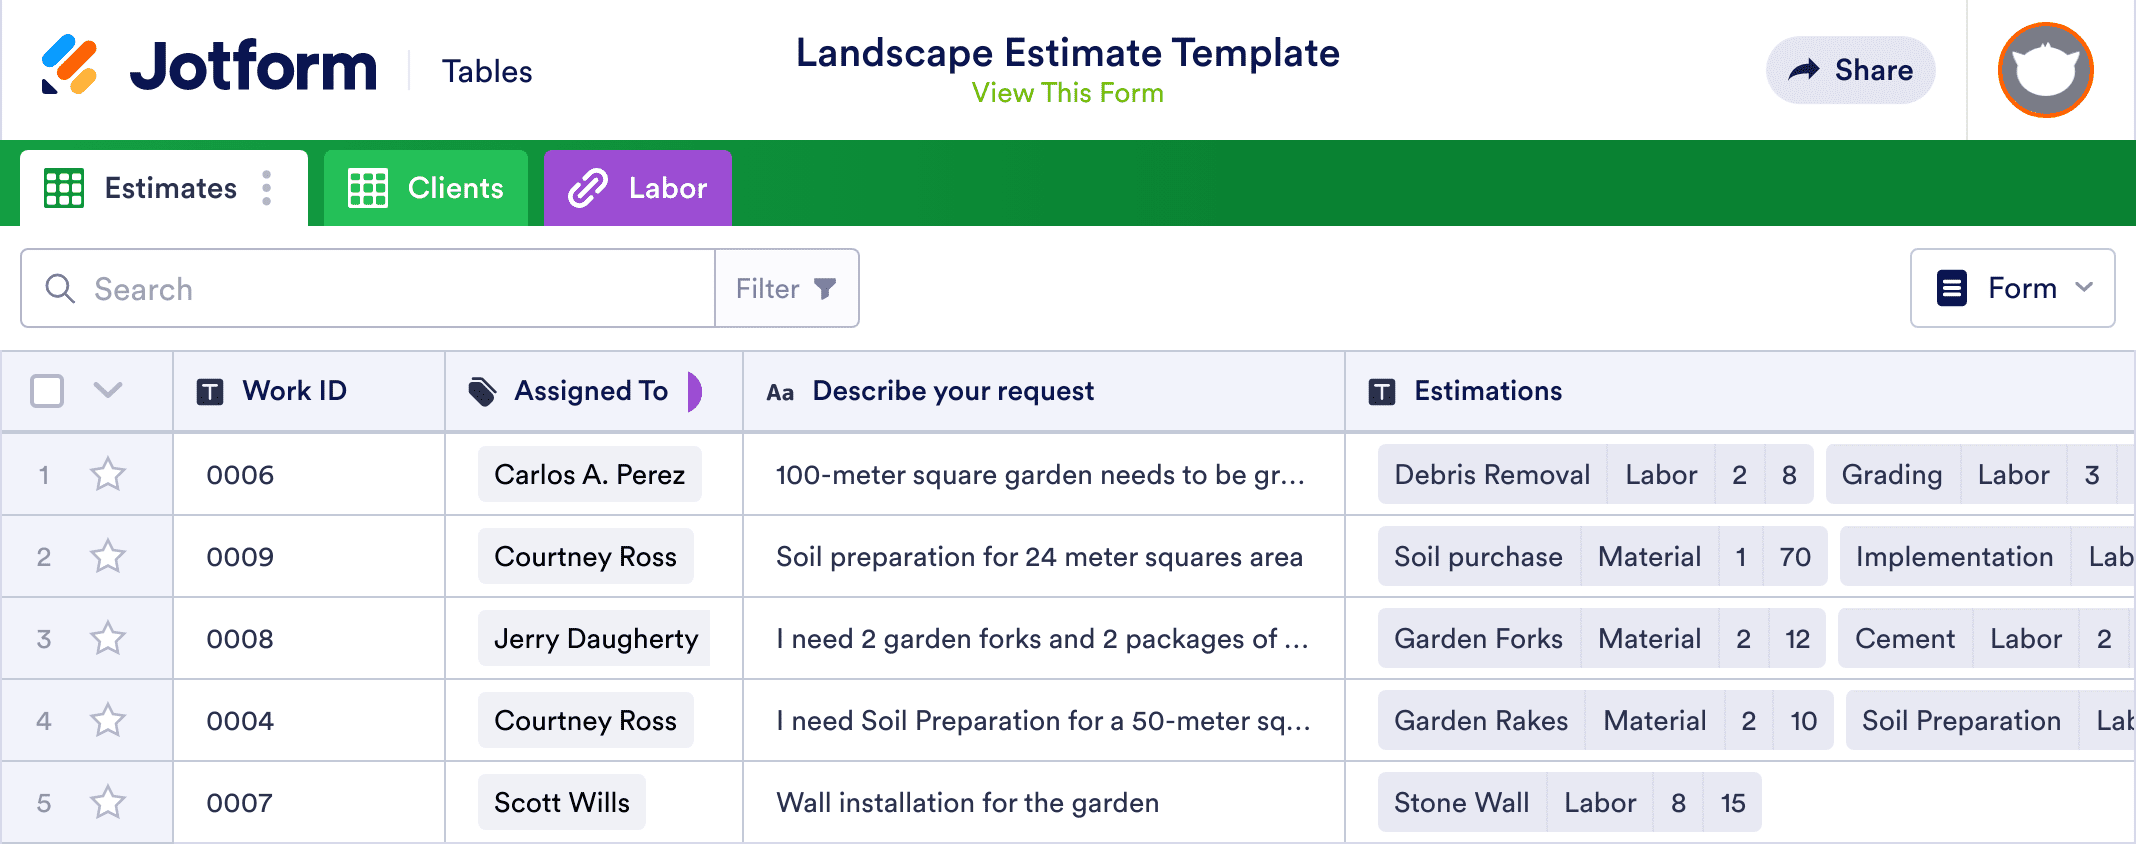 Landscape Estimate Template